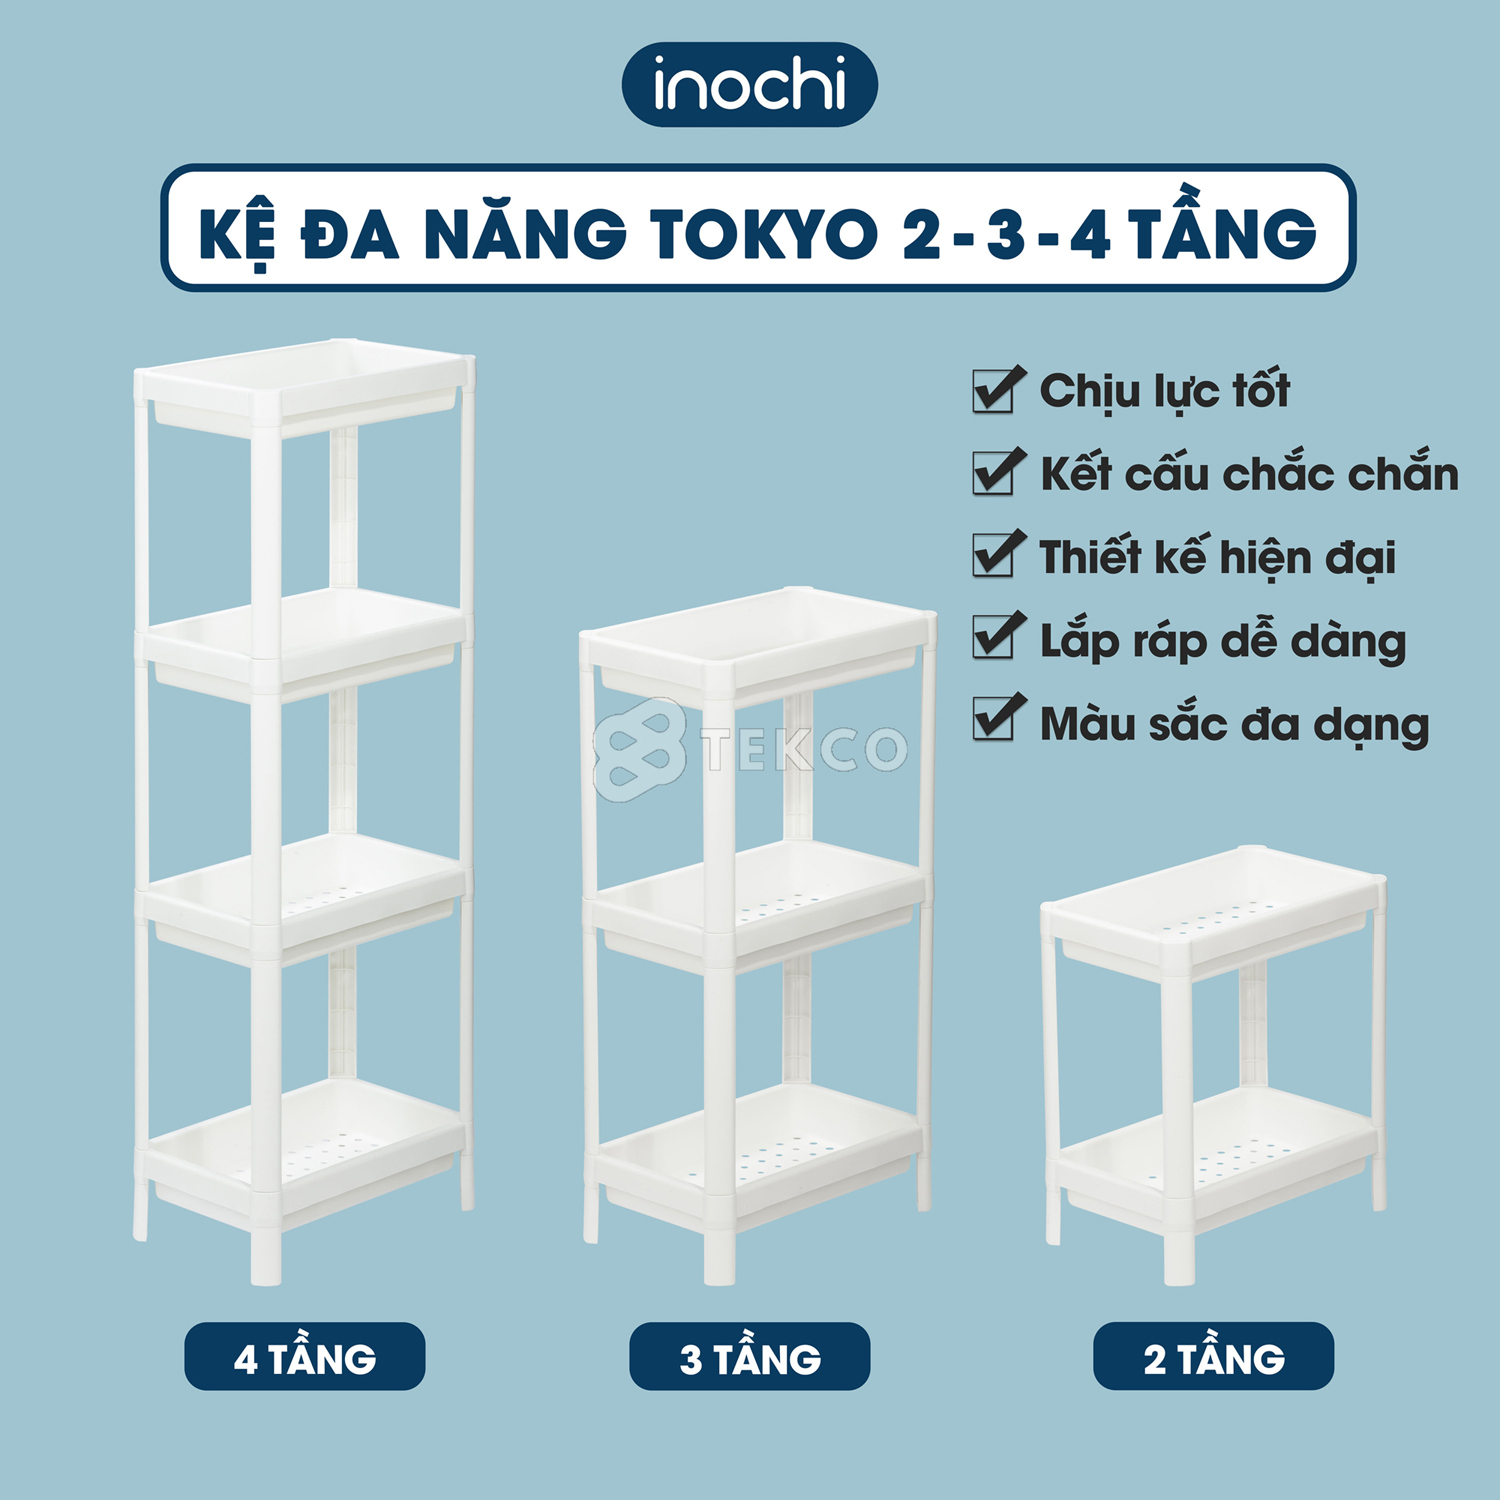 Kệ nhựa đựng đồ nhà tắm, nhà bếp Tokyo INOCHI 2-3-4 tầng - Giá để chén bát